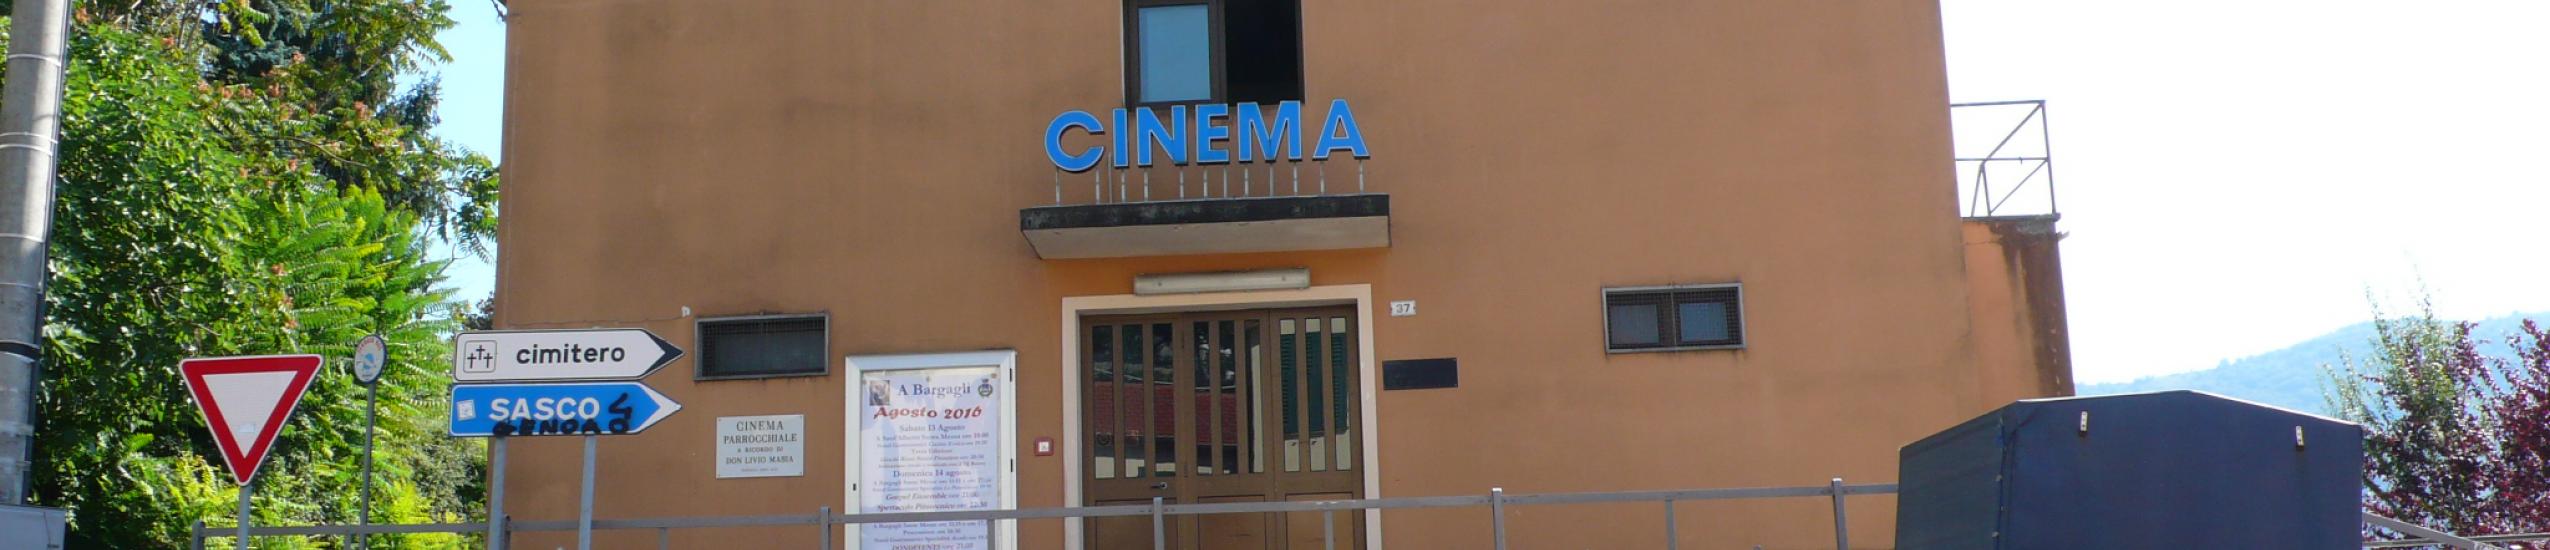 Cinema parrocchiale